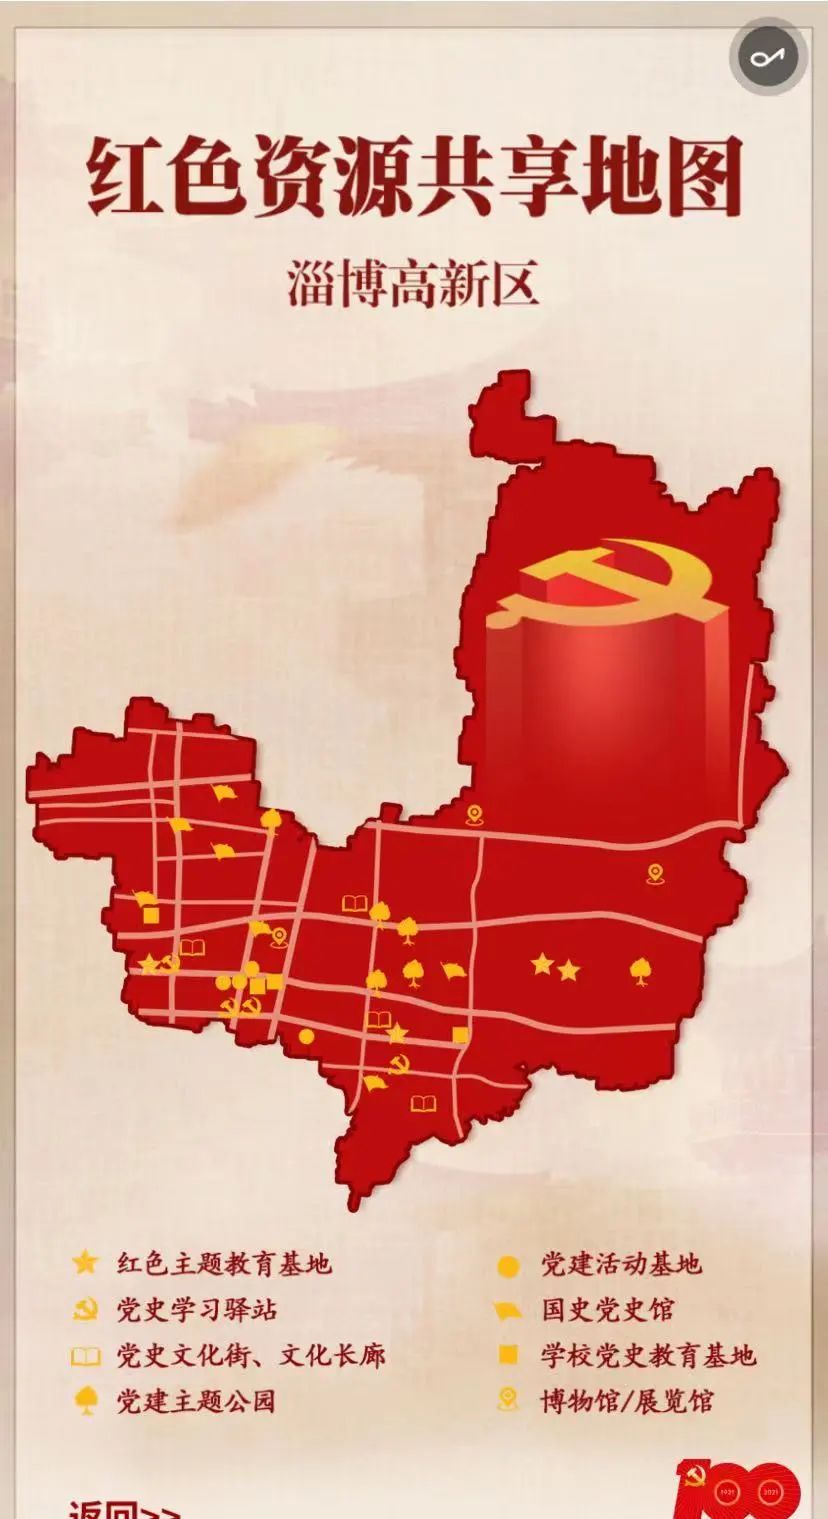 邀你一起打卡淄博高新区红色资源共享地图上线